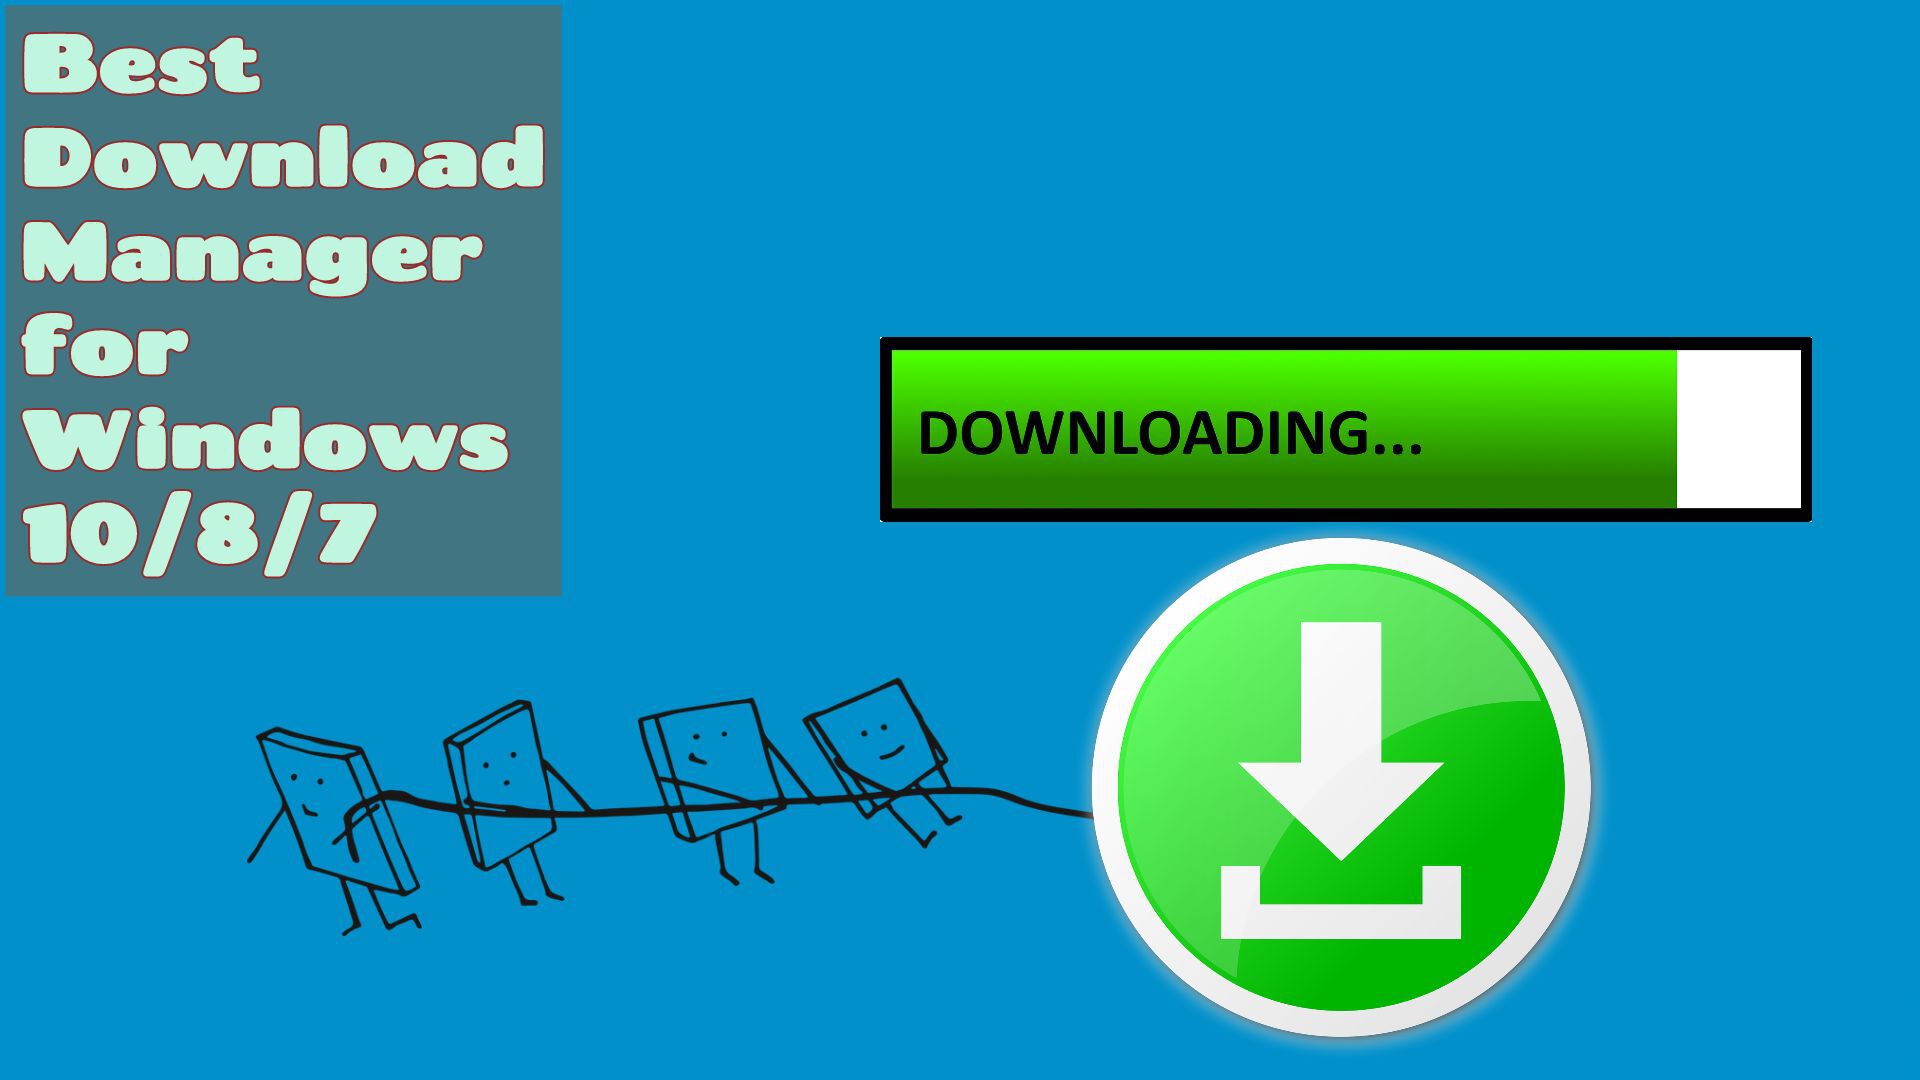 download aplikasi internet download manager free